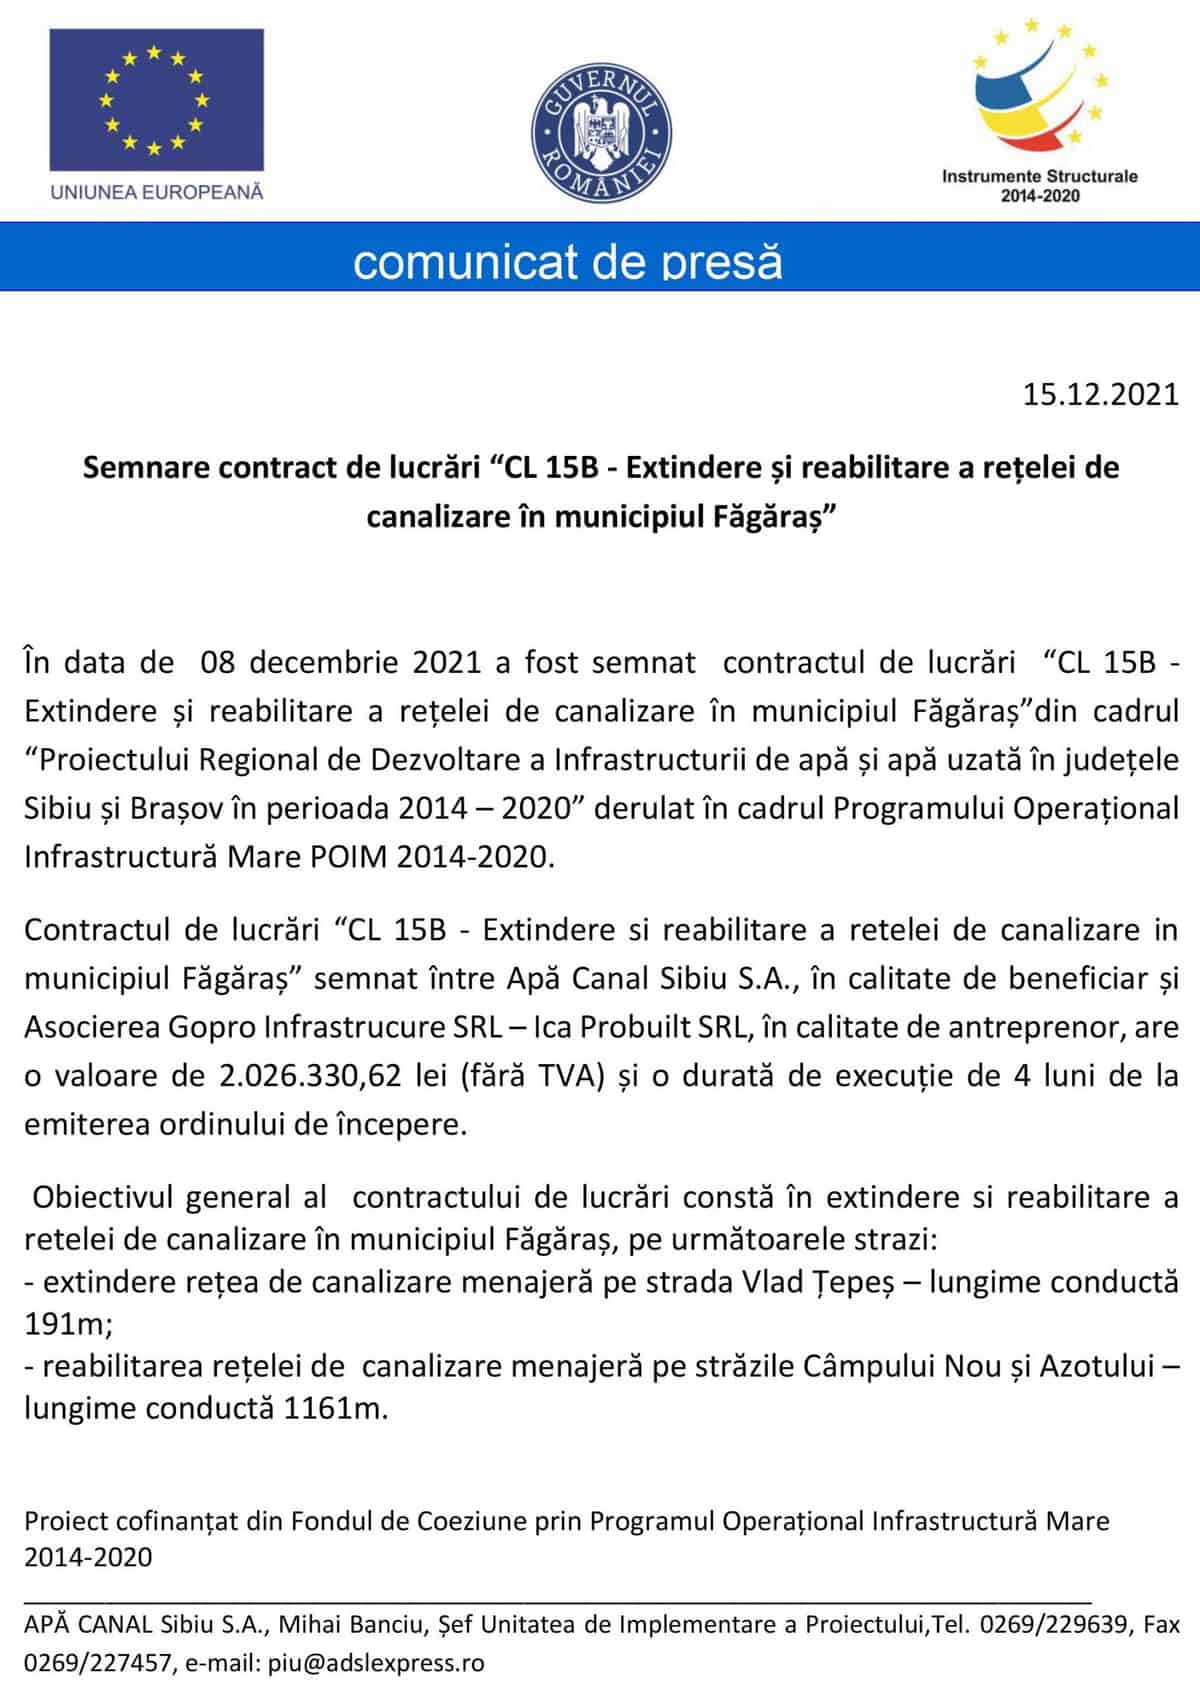 semnare contract de lucrări “cl 15b - extindere și reabilitare a rețelei de canalizare în municipiul făgăraș”